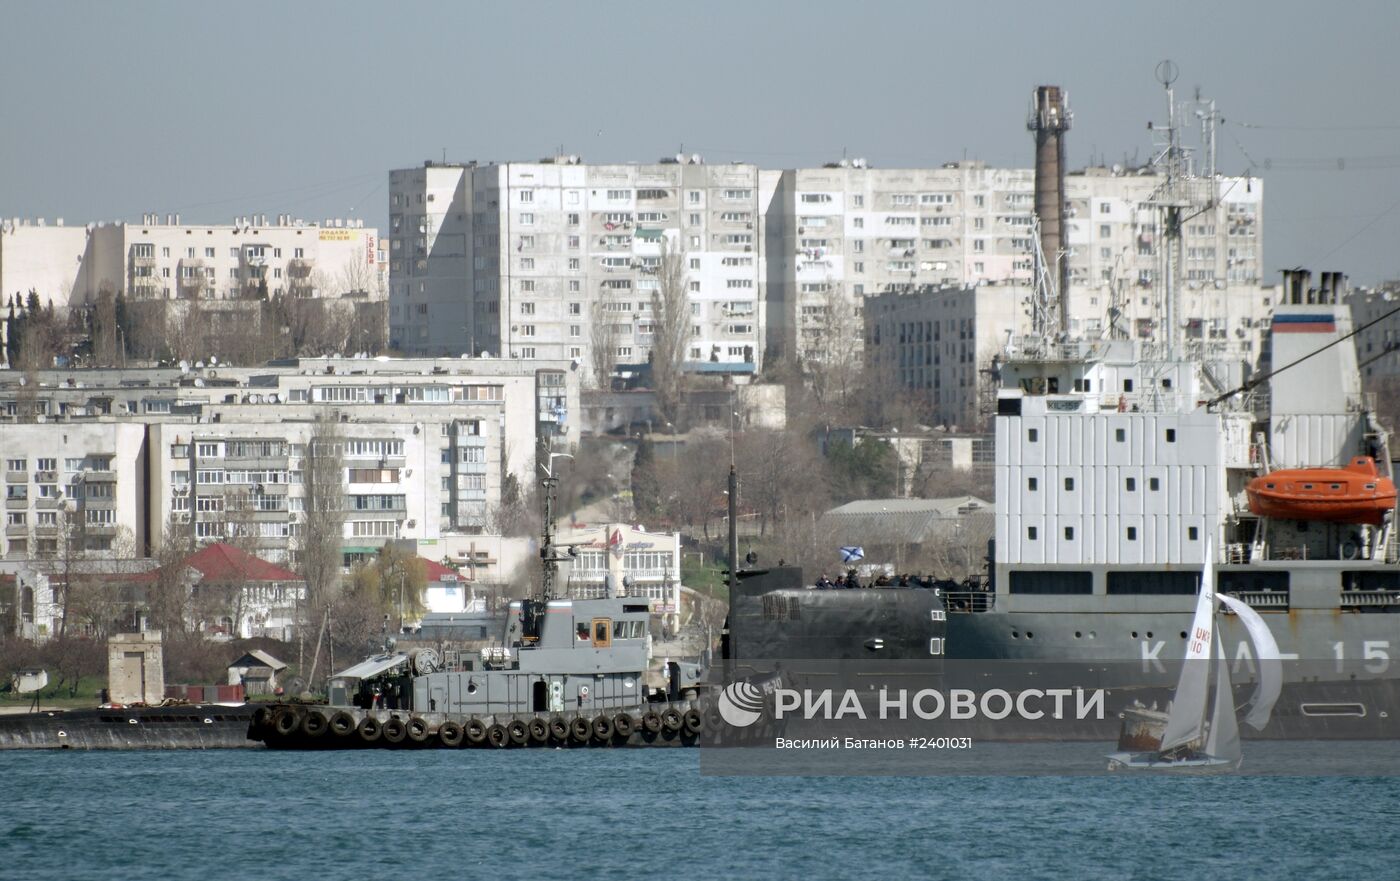 Андреевский флаг поднят на подлодке "Запорожье" ВМС Украины